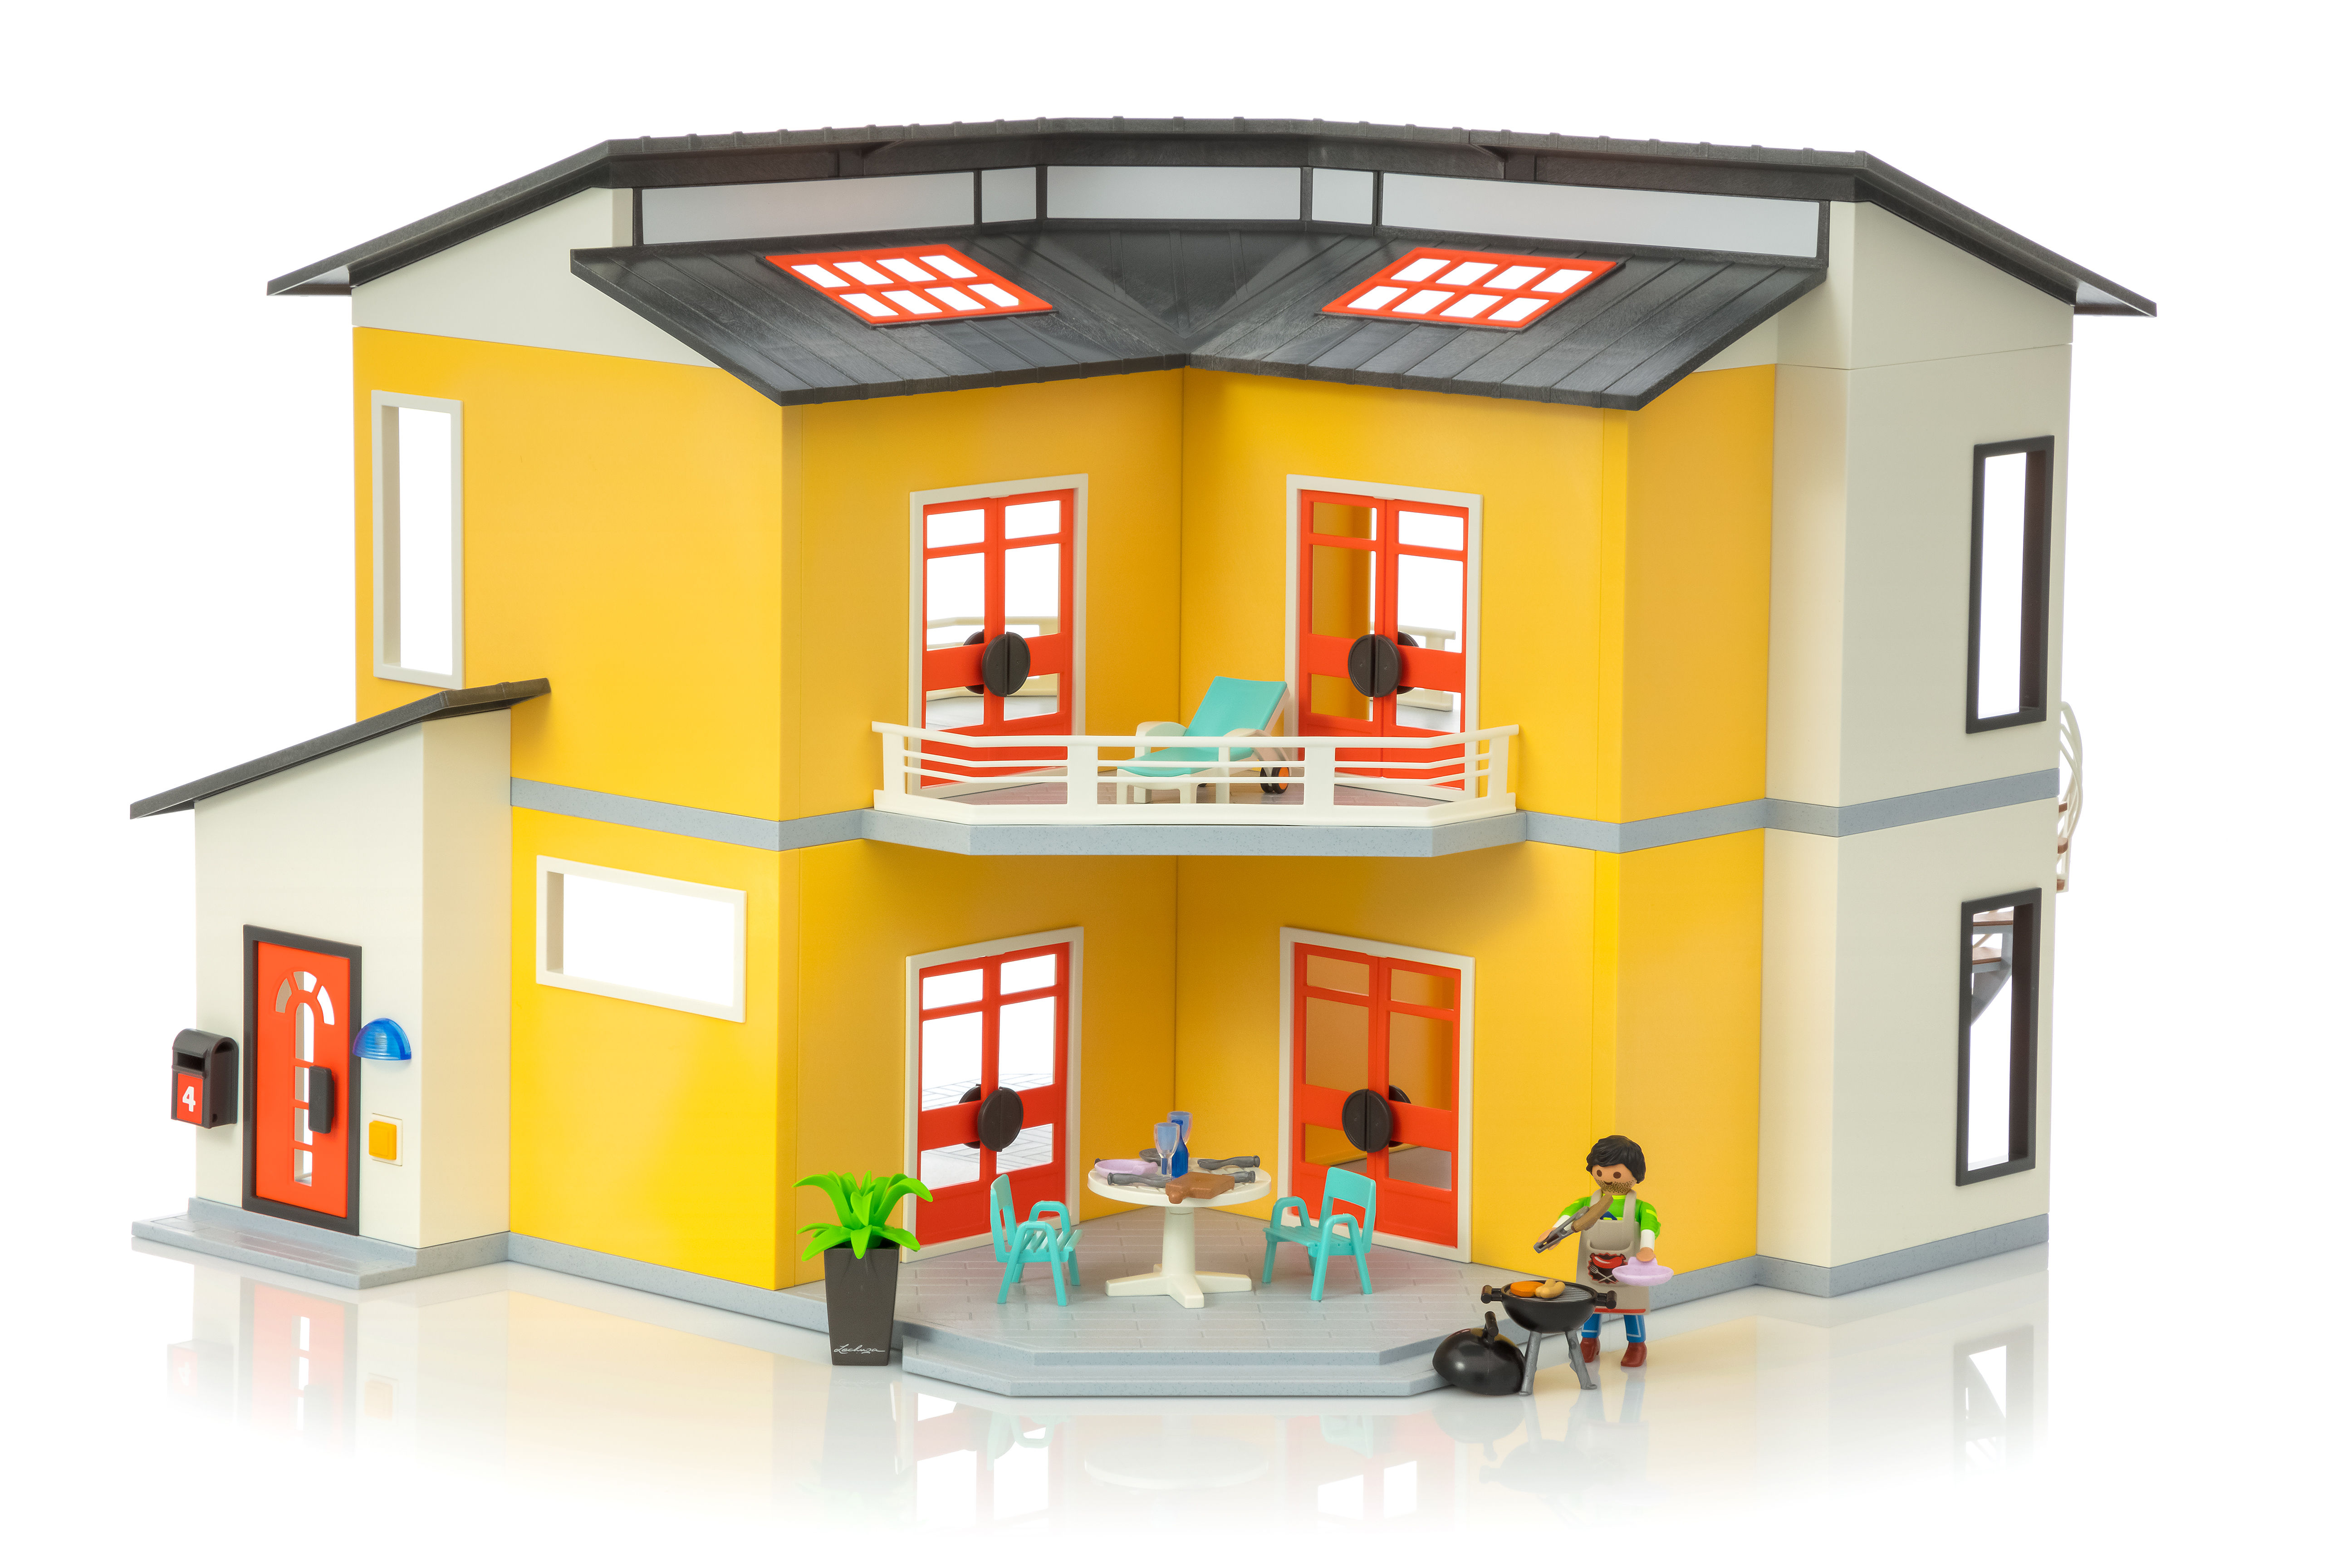 La maison des jouets - Maison moderne PLAYMOBIL avec sa boîte, 62